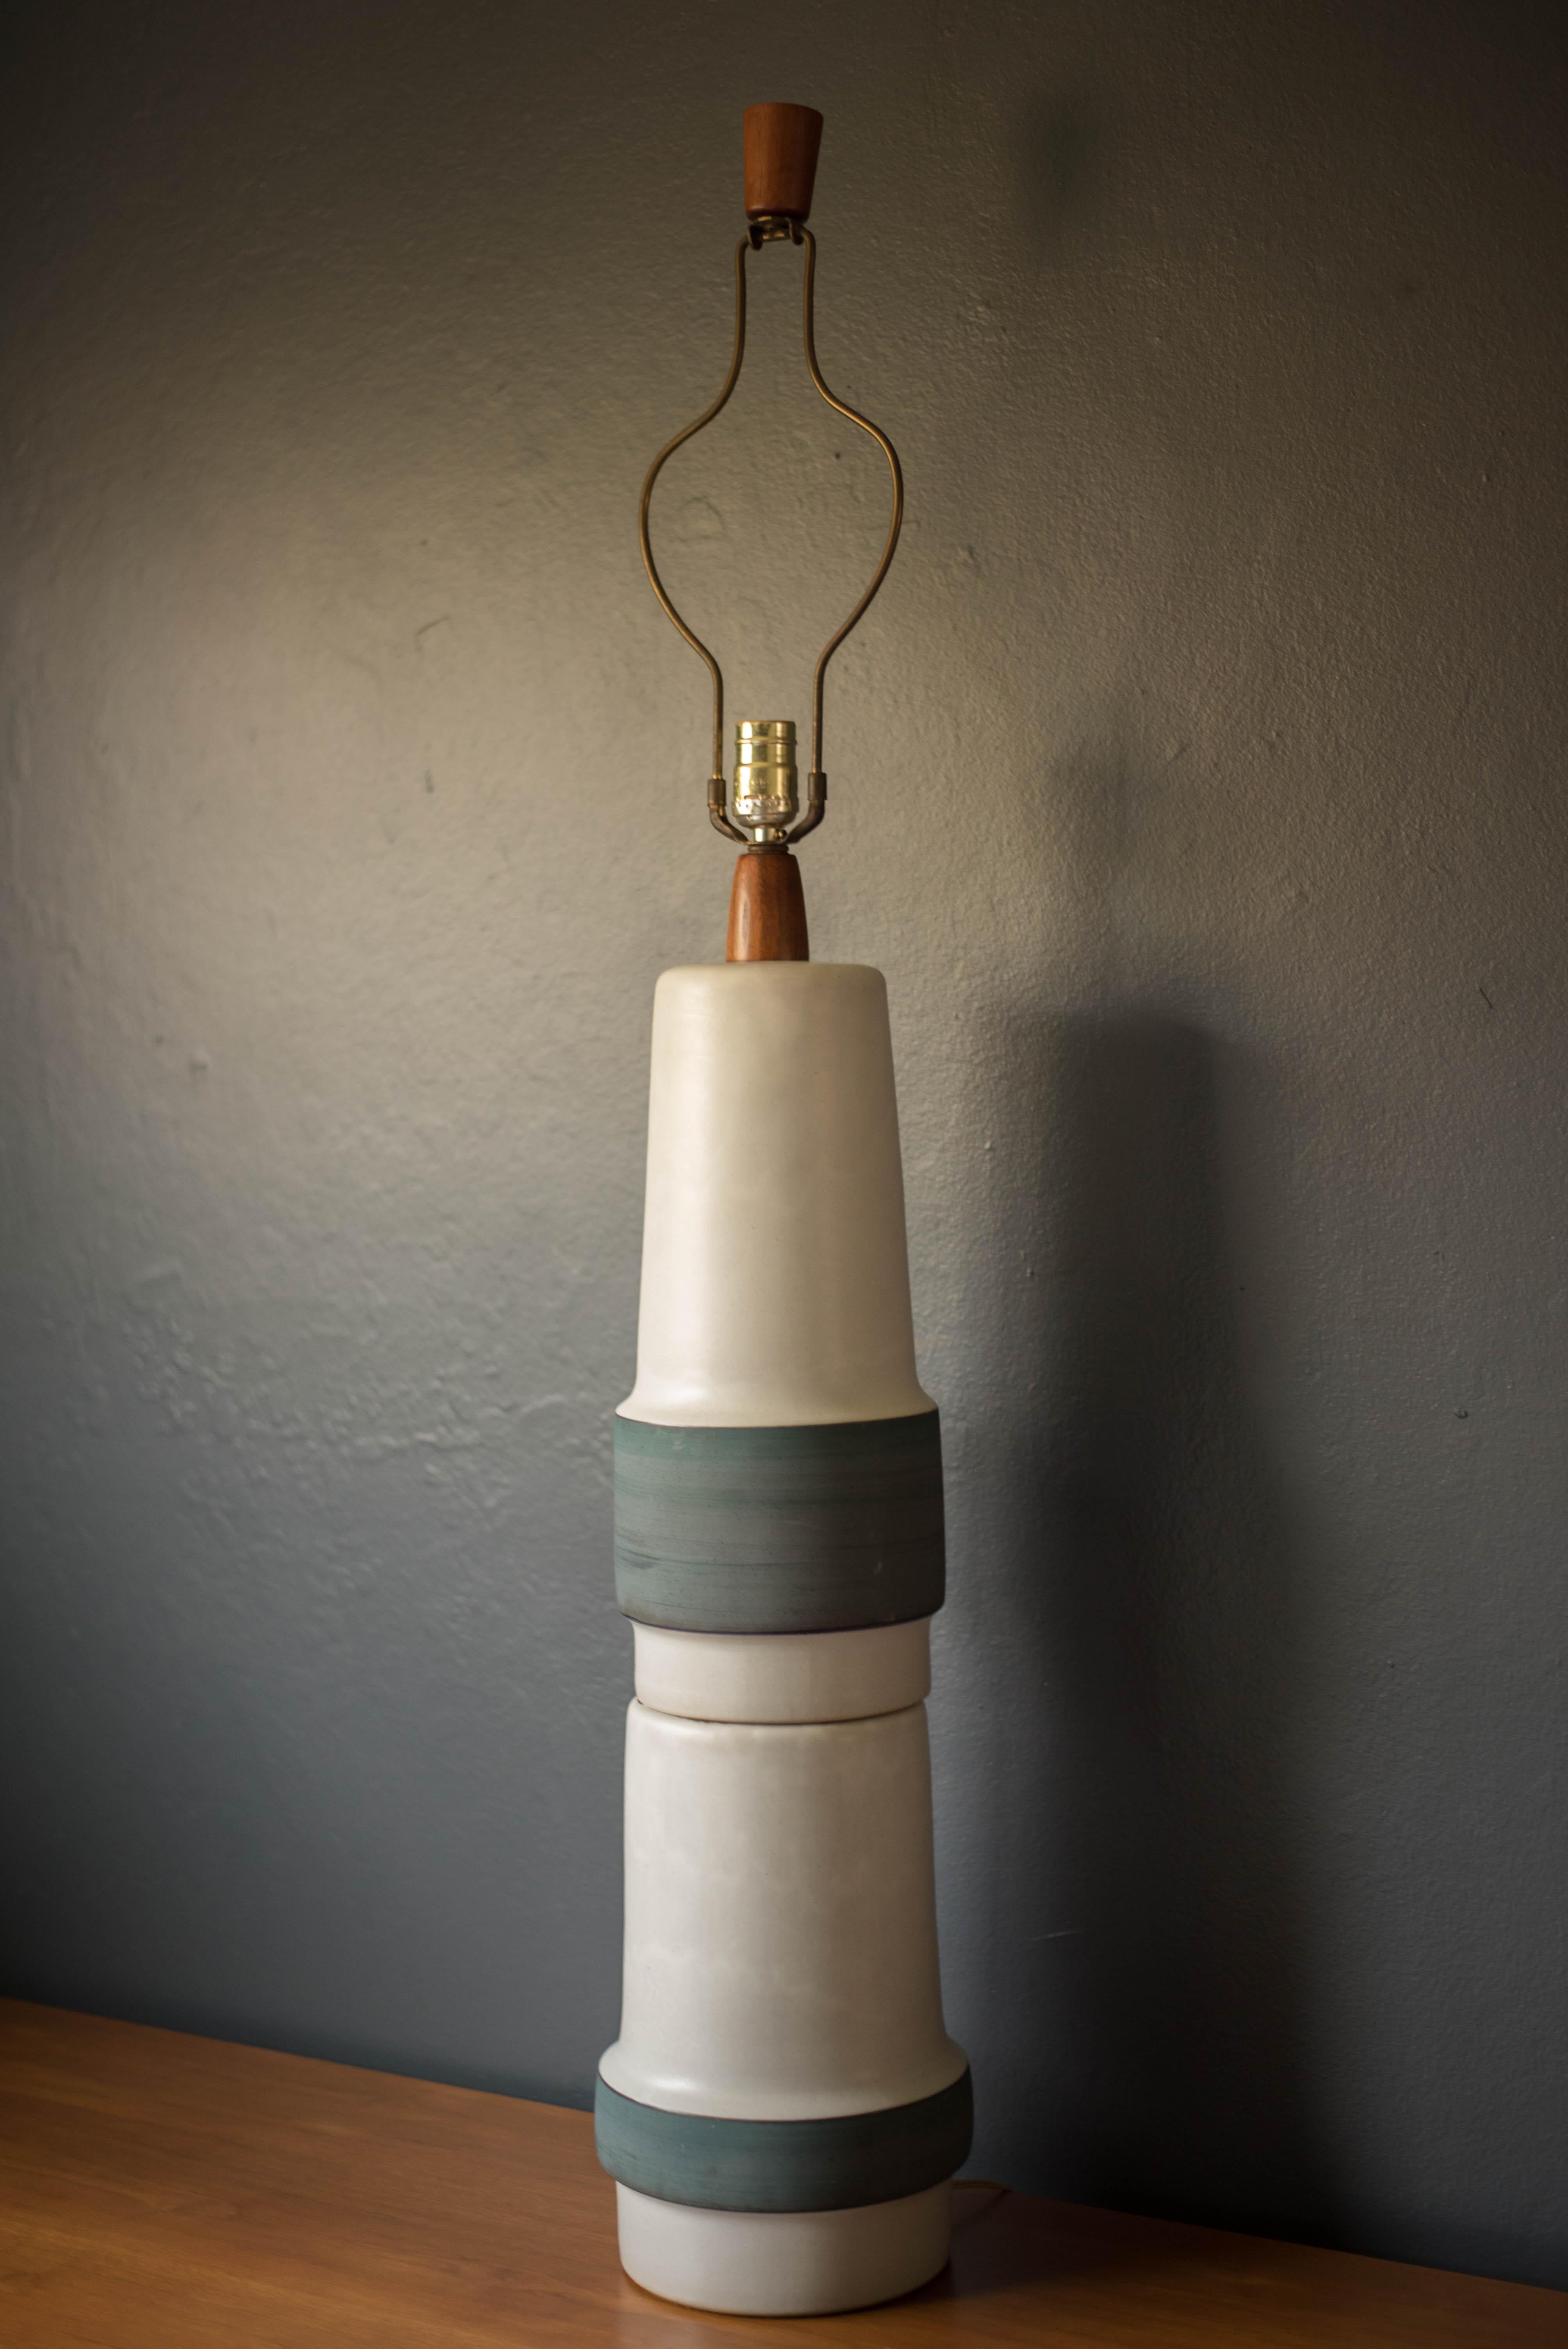 Lampe vintage en céramique tournée à la main par Gordon et Jane Martz pour Marshall Studios. Cette lampe de table surdimensionnée présente une forme sculpturale à double empilement dans une glaçure blanche et une finition bleue mate brossée.